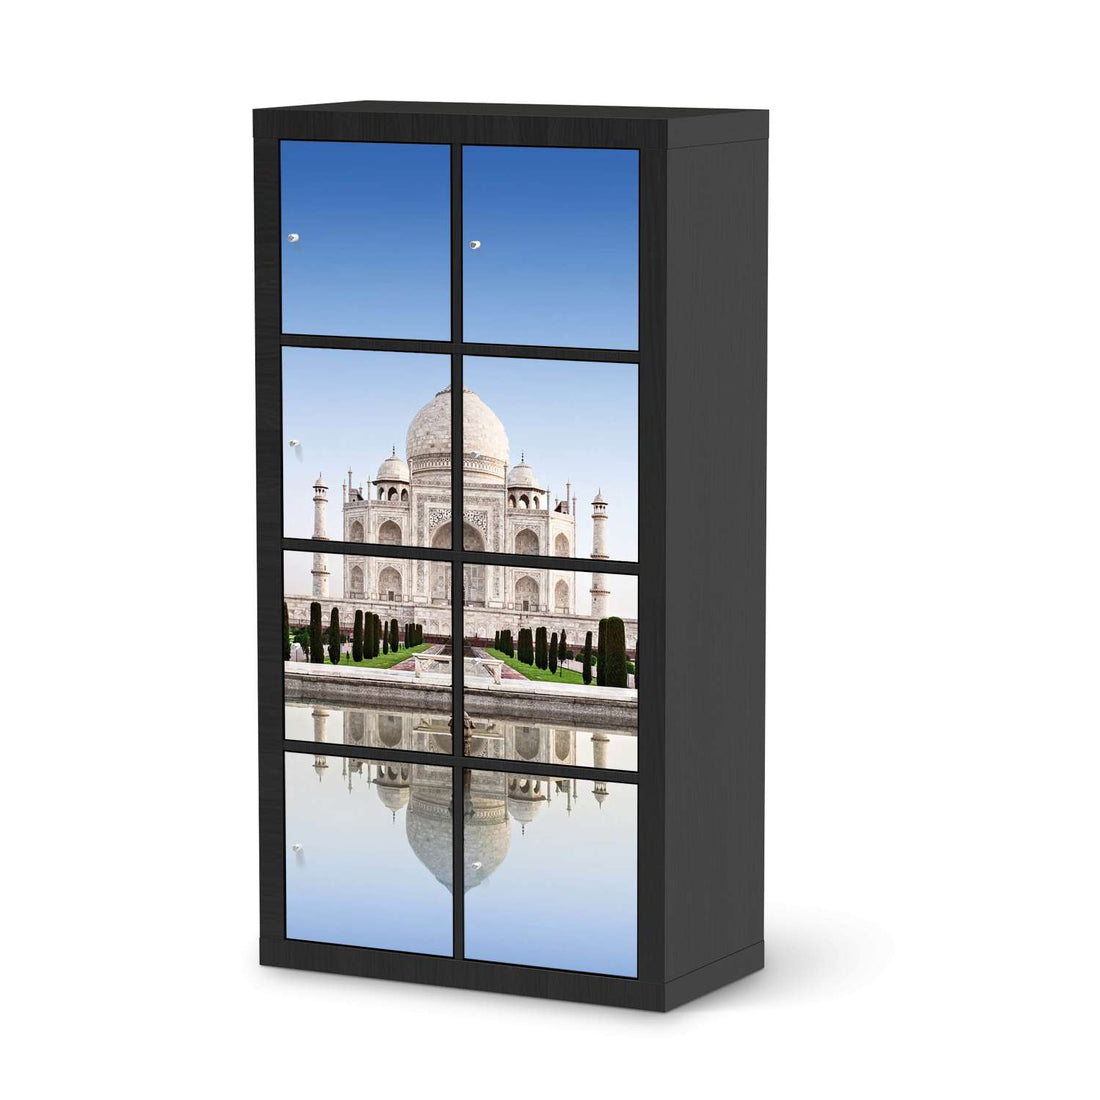 Folie für Möbel Taj Mahal - IKEA Kallax Regal 8 Türen - schwarz